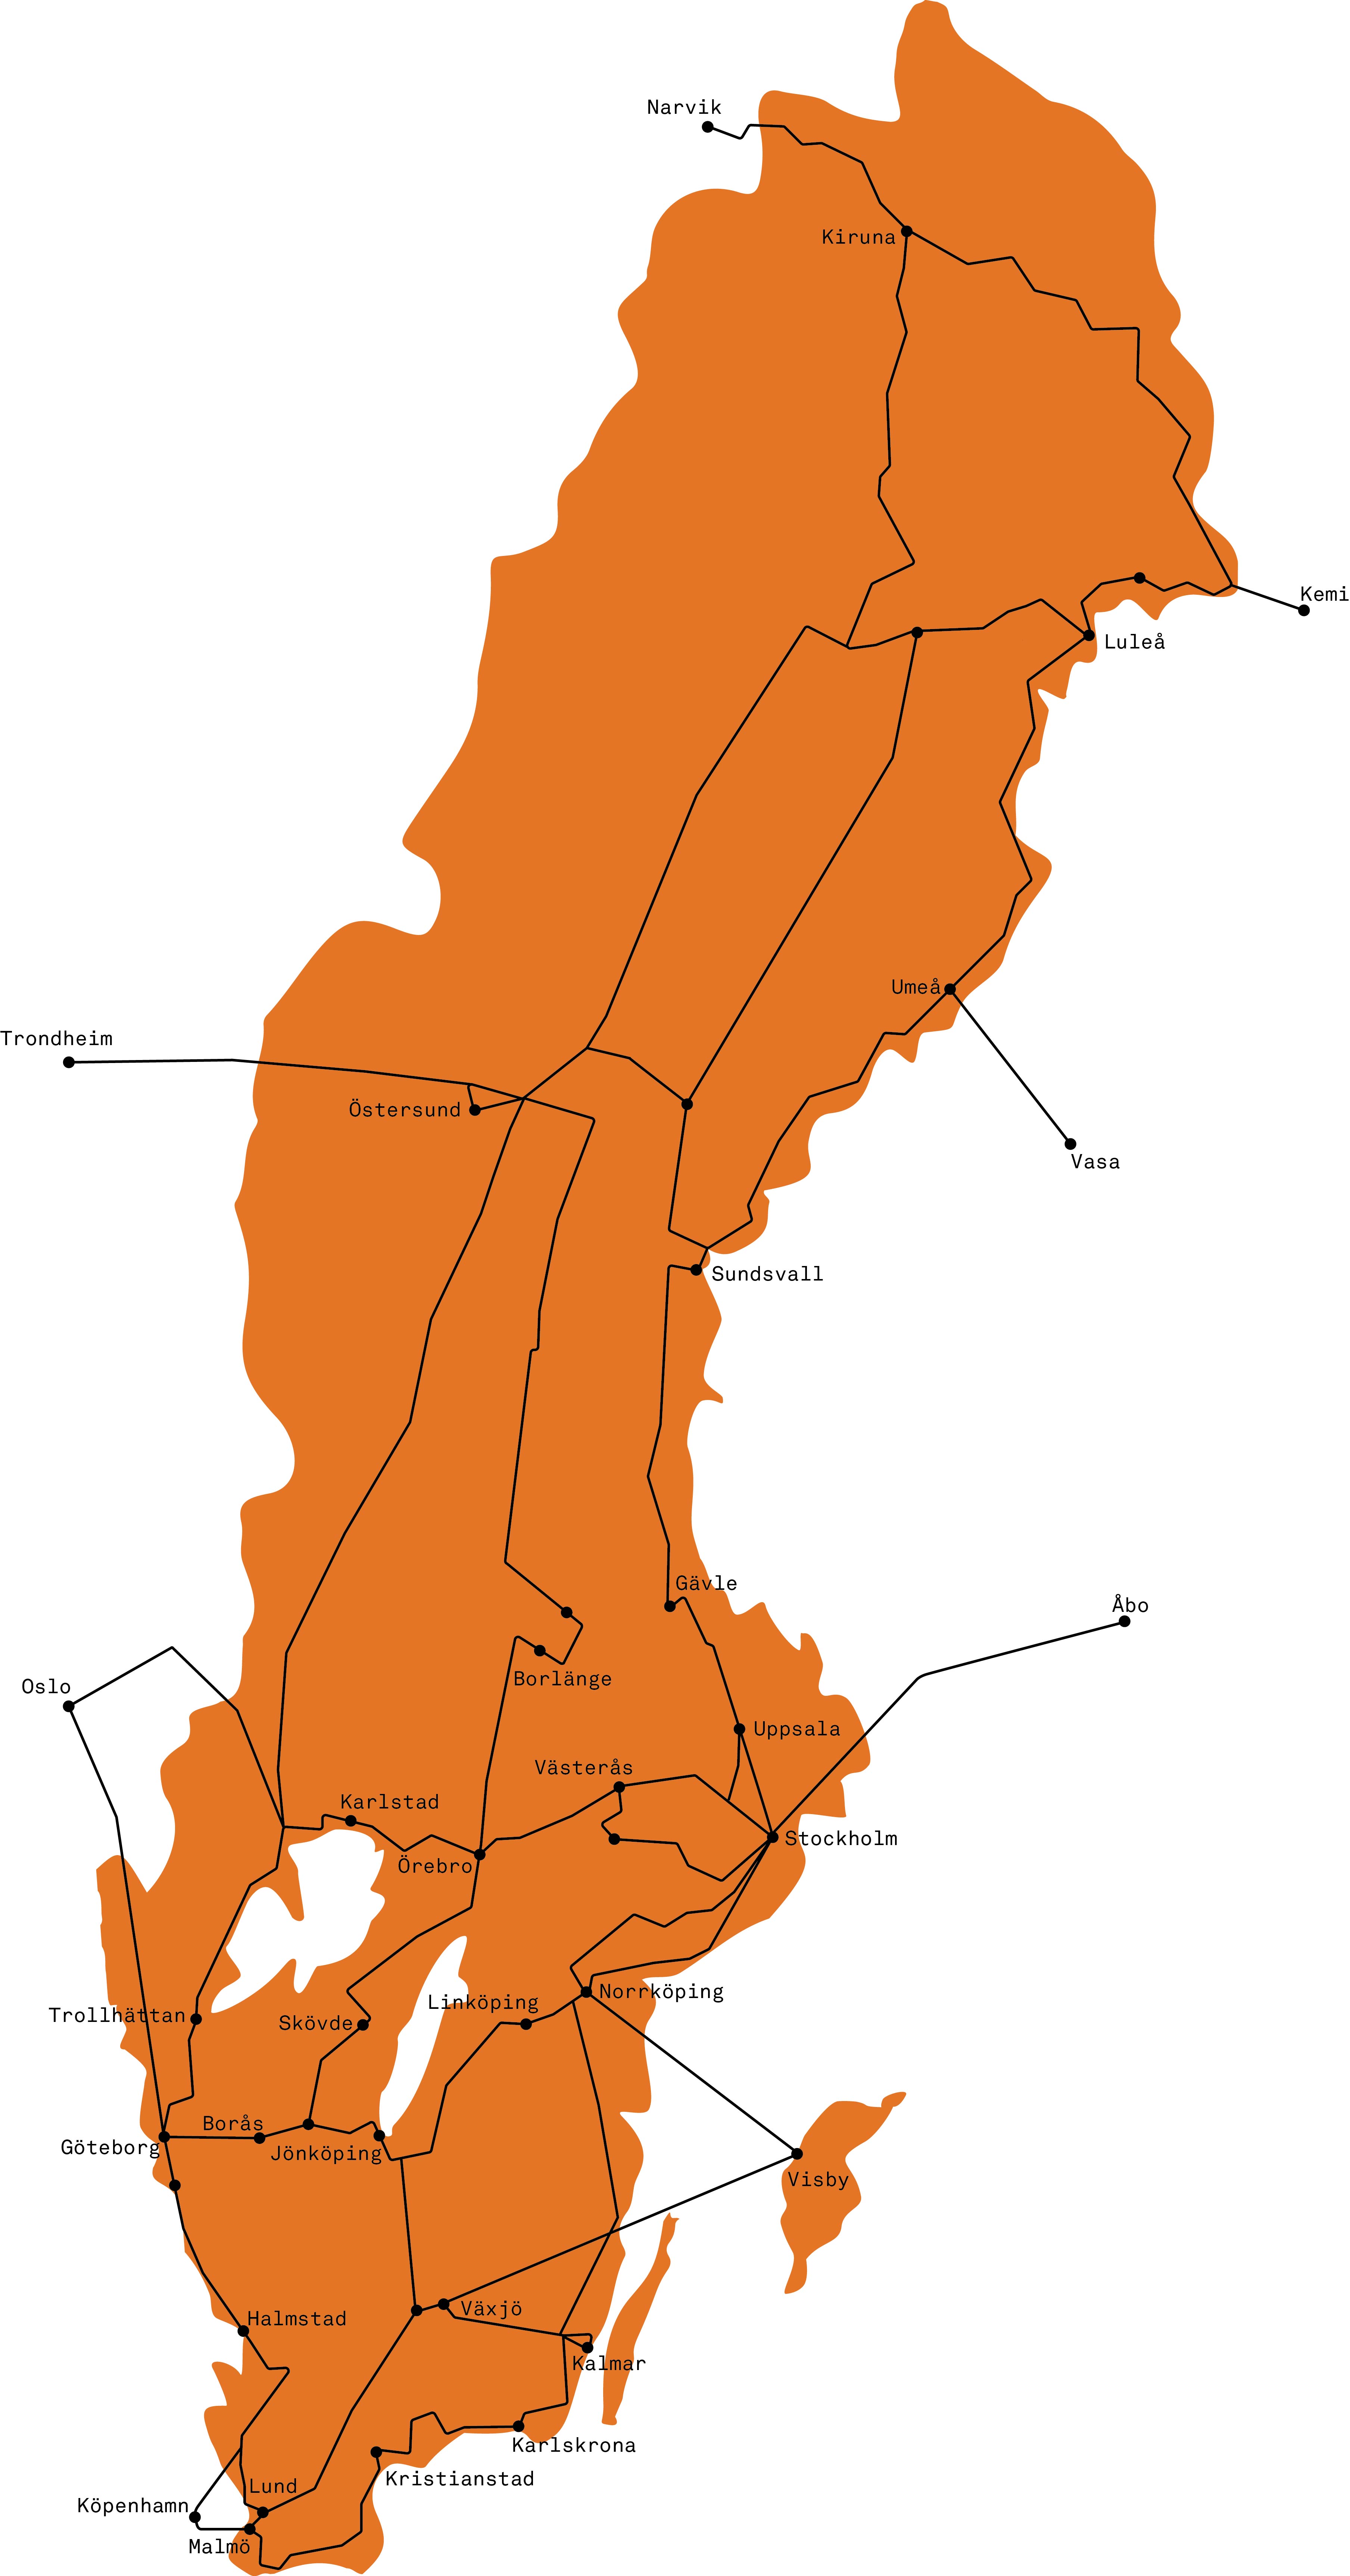 Sverigekarta med Sunets fiberväg utmarkerad över hela landet